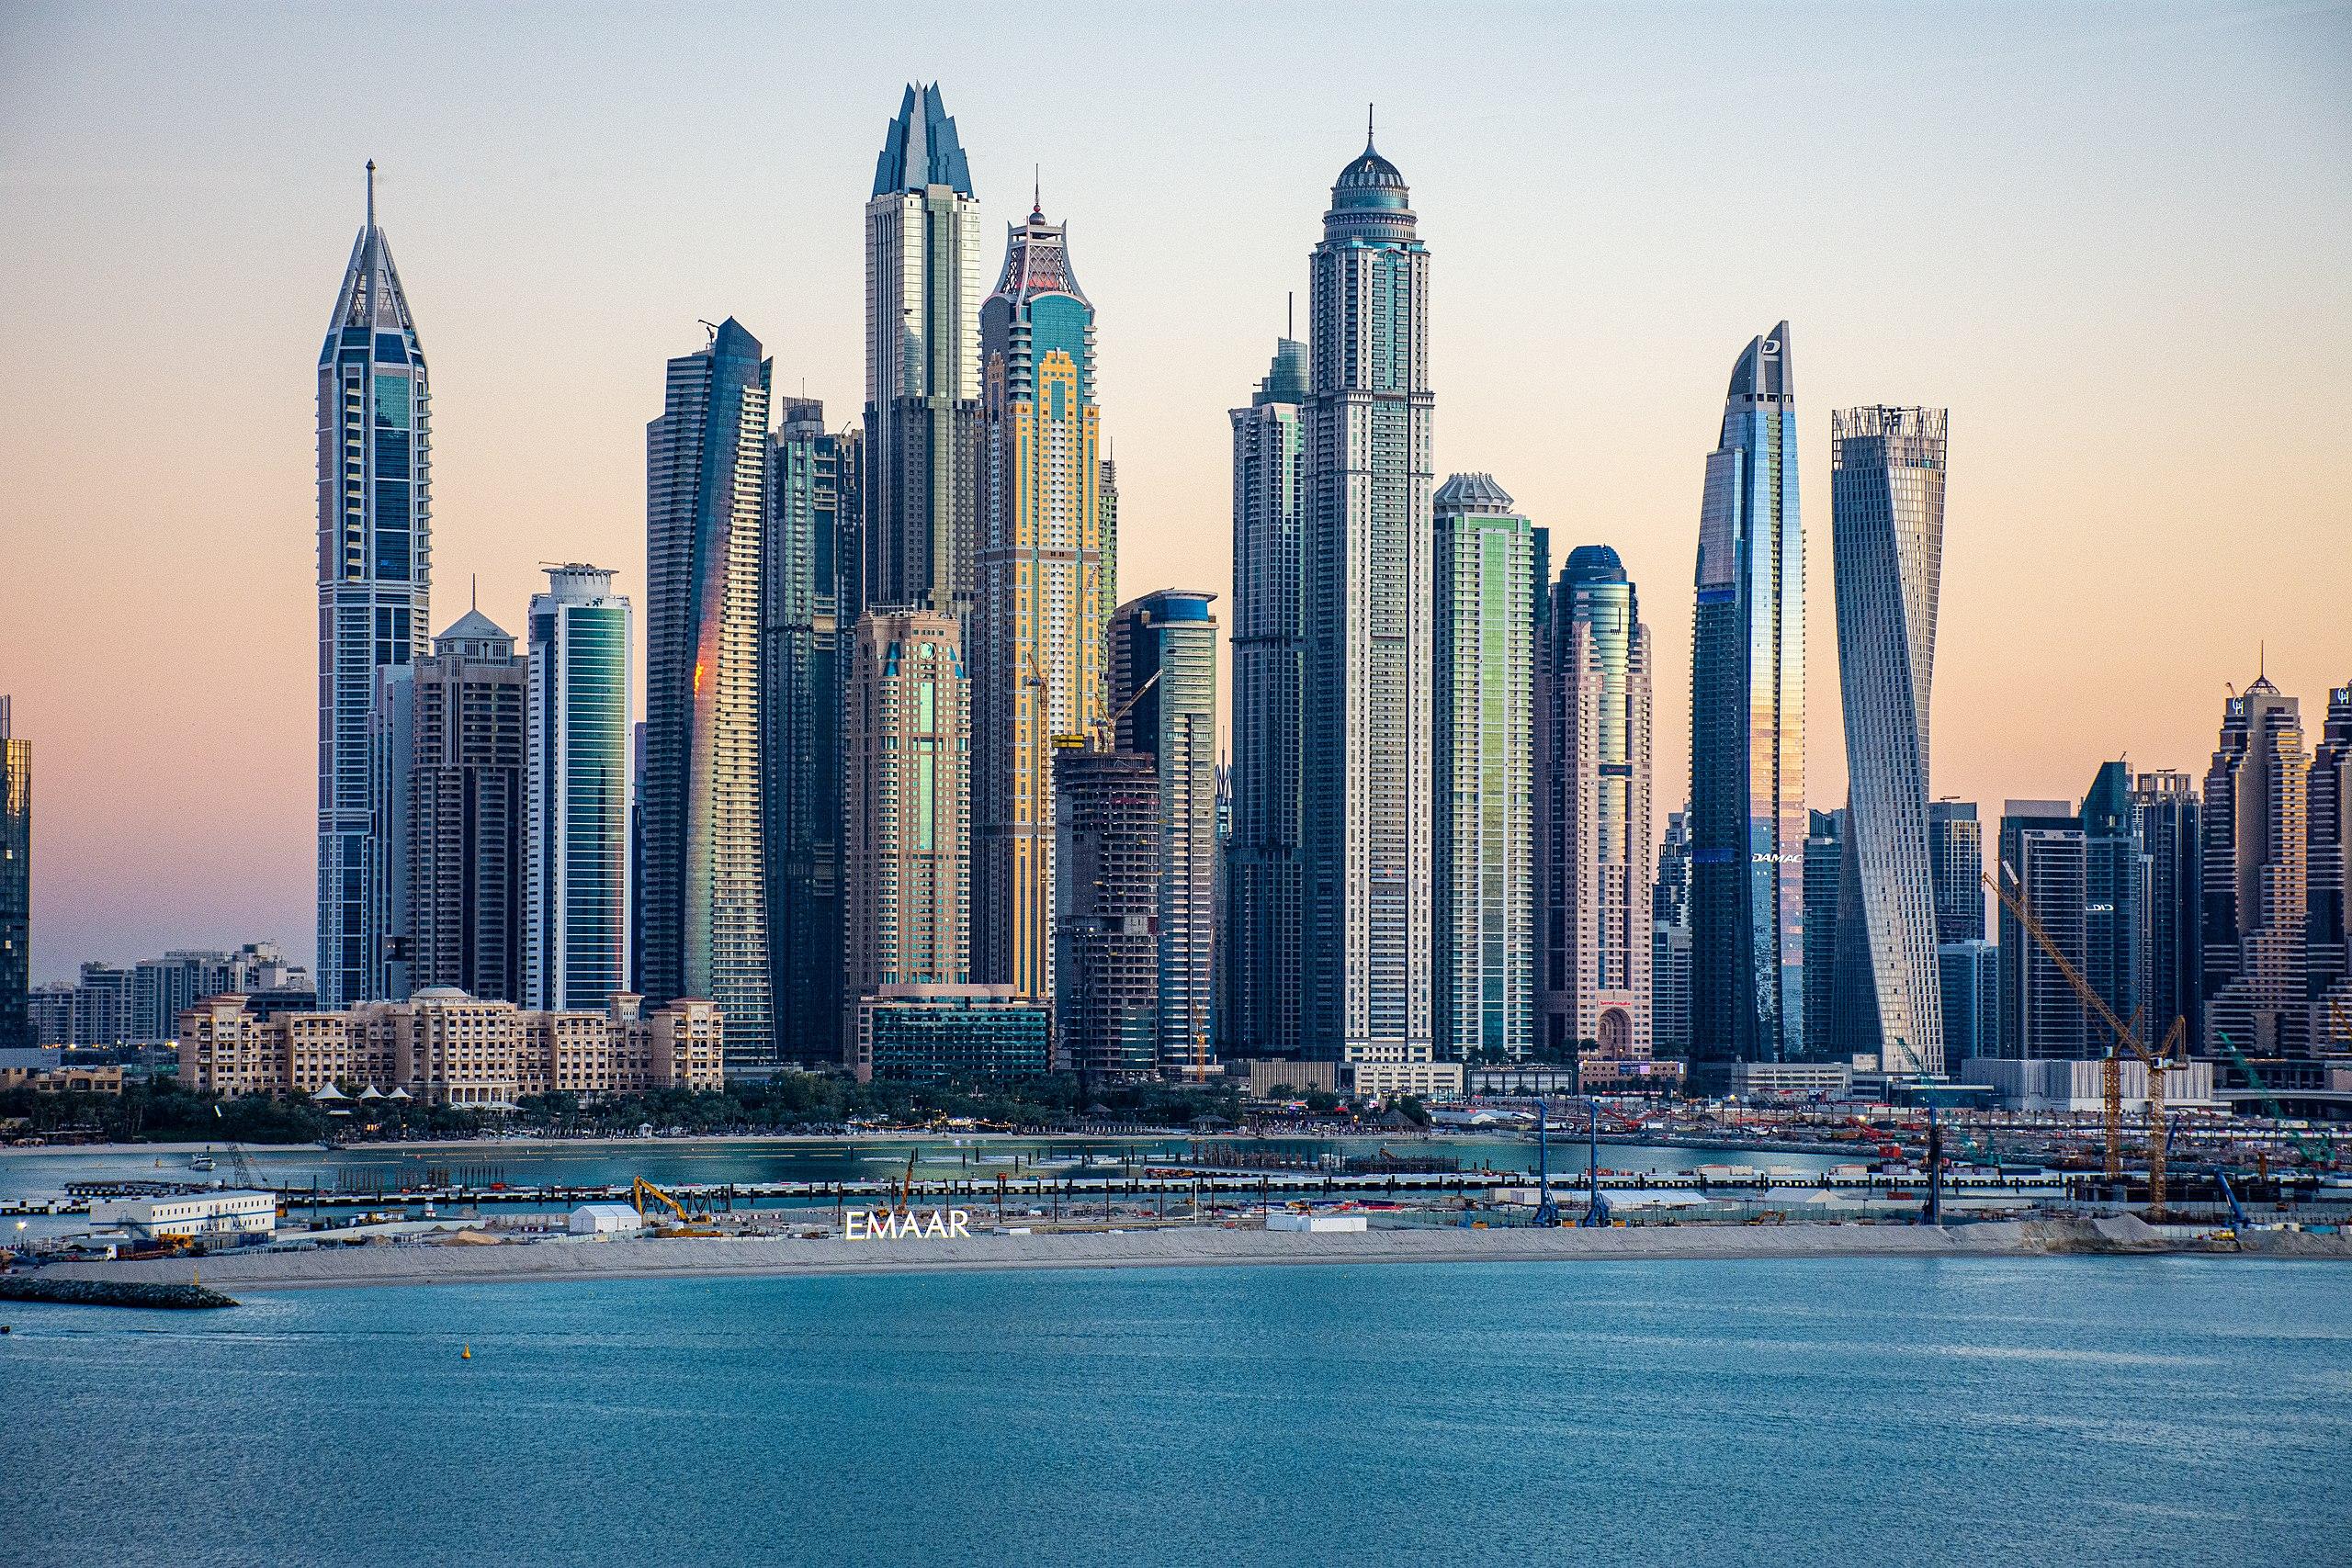 ντουμπάι πανοραμική φωτογραφία με τους ουρανοξύστες και τον πύργο μπουρτζ χαλίφα να ξεχωρίζει